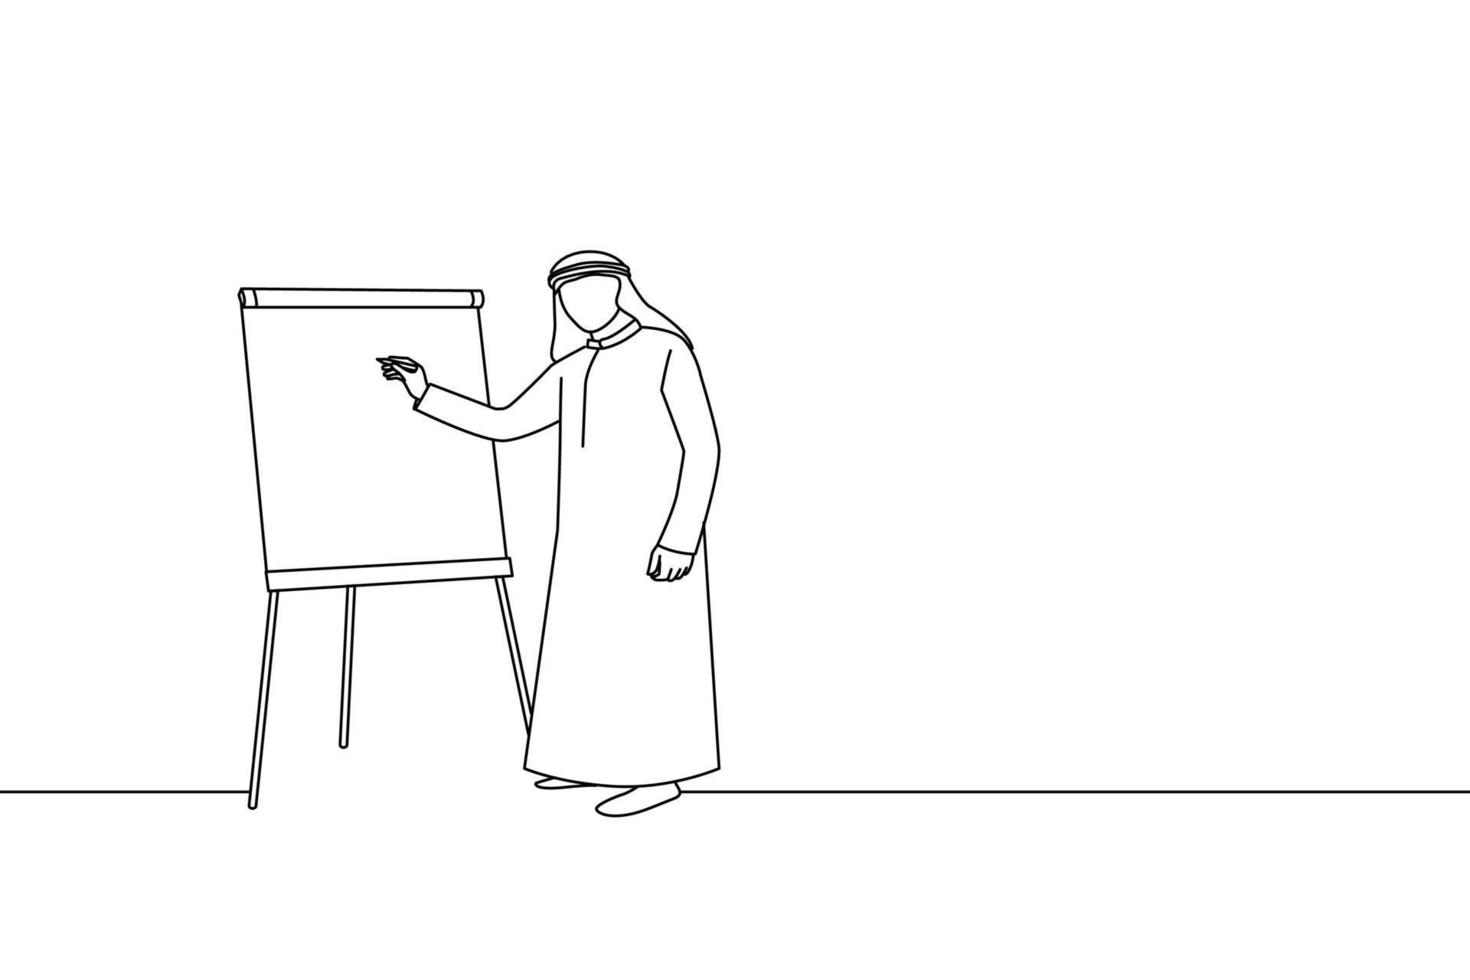 dessin animé d'un homme d'affaires arabe donnant une présentation avec un tableau à feuilles mobiles. style de dessin au trait vecteur